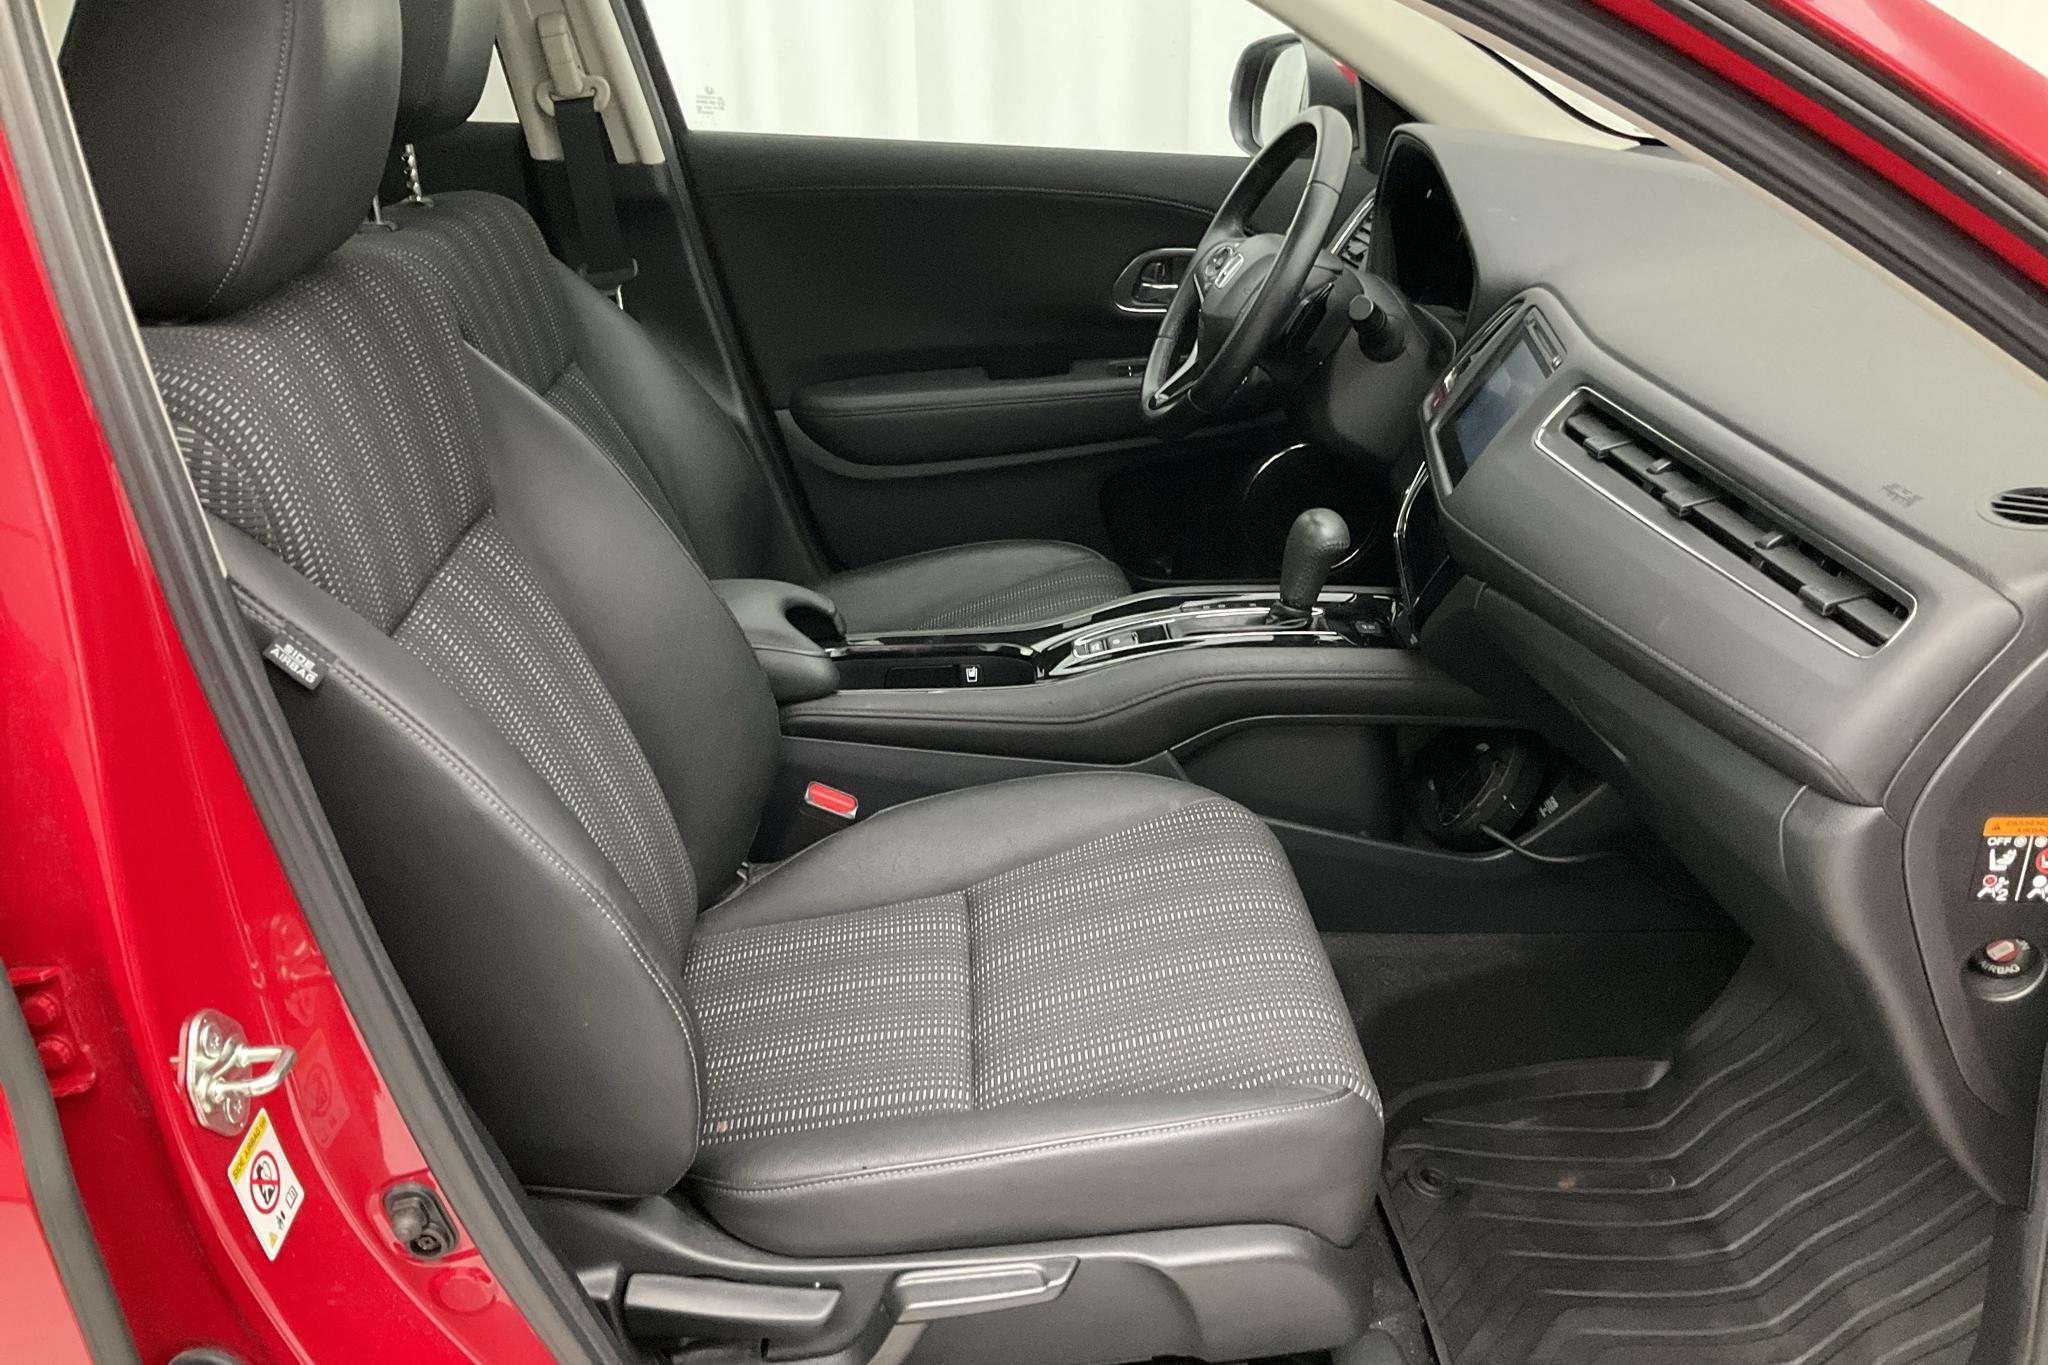 Honda HR-V 1.5 2WD (130hk) - 34 440 km - Automatyczna - czerwony - 2017